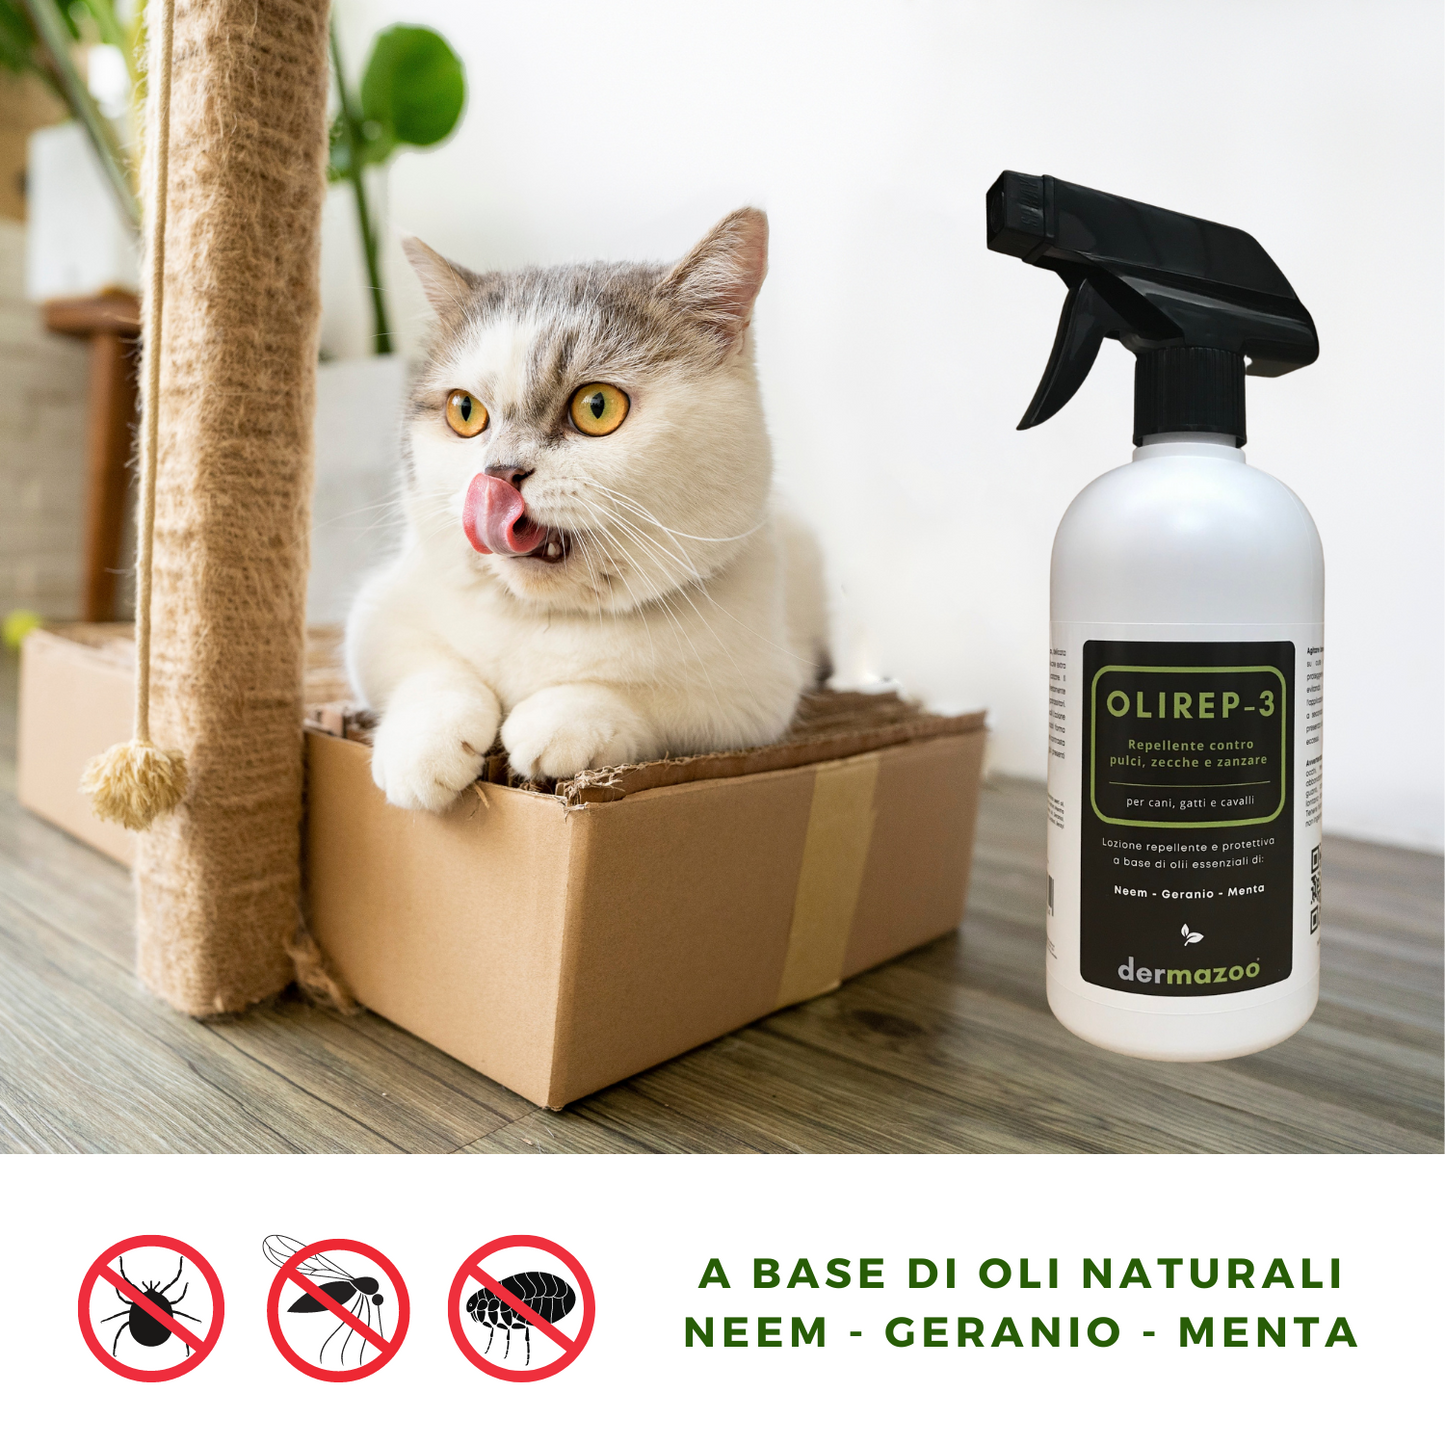 dermazoo - OLIREP-3 Repellente Spray naturale per cani con Oli essenzi -  shopmazoo